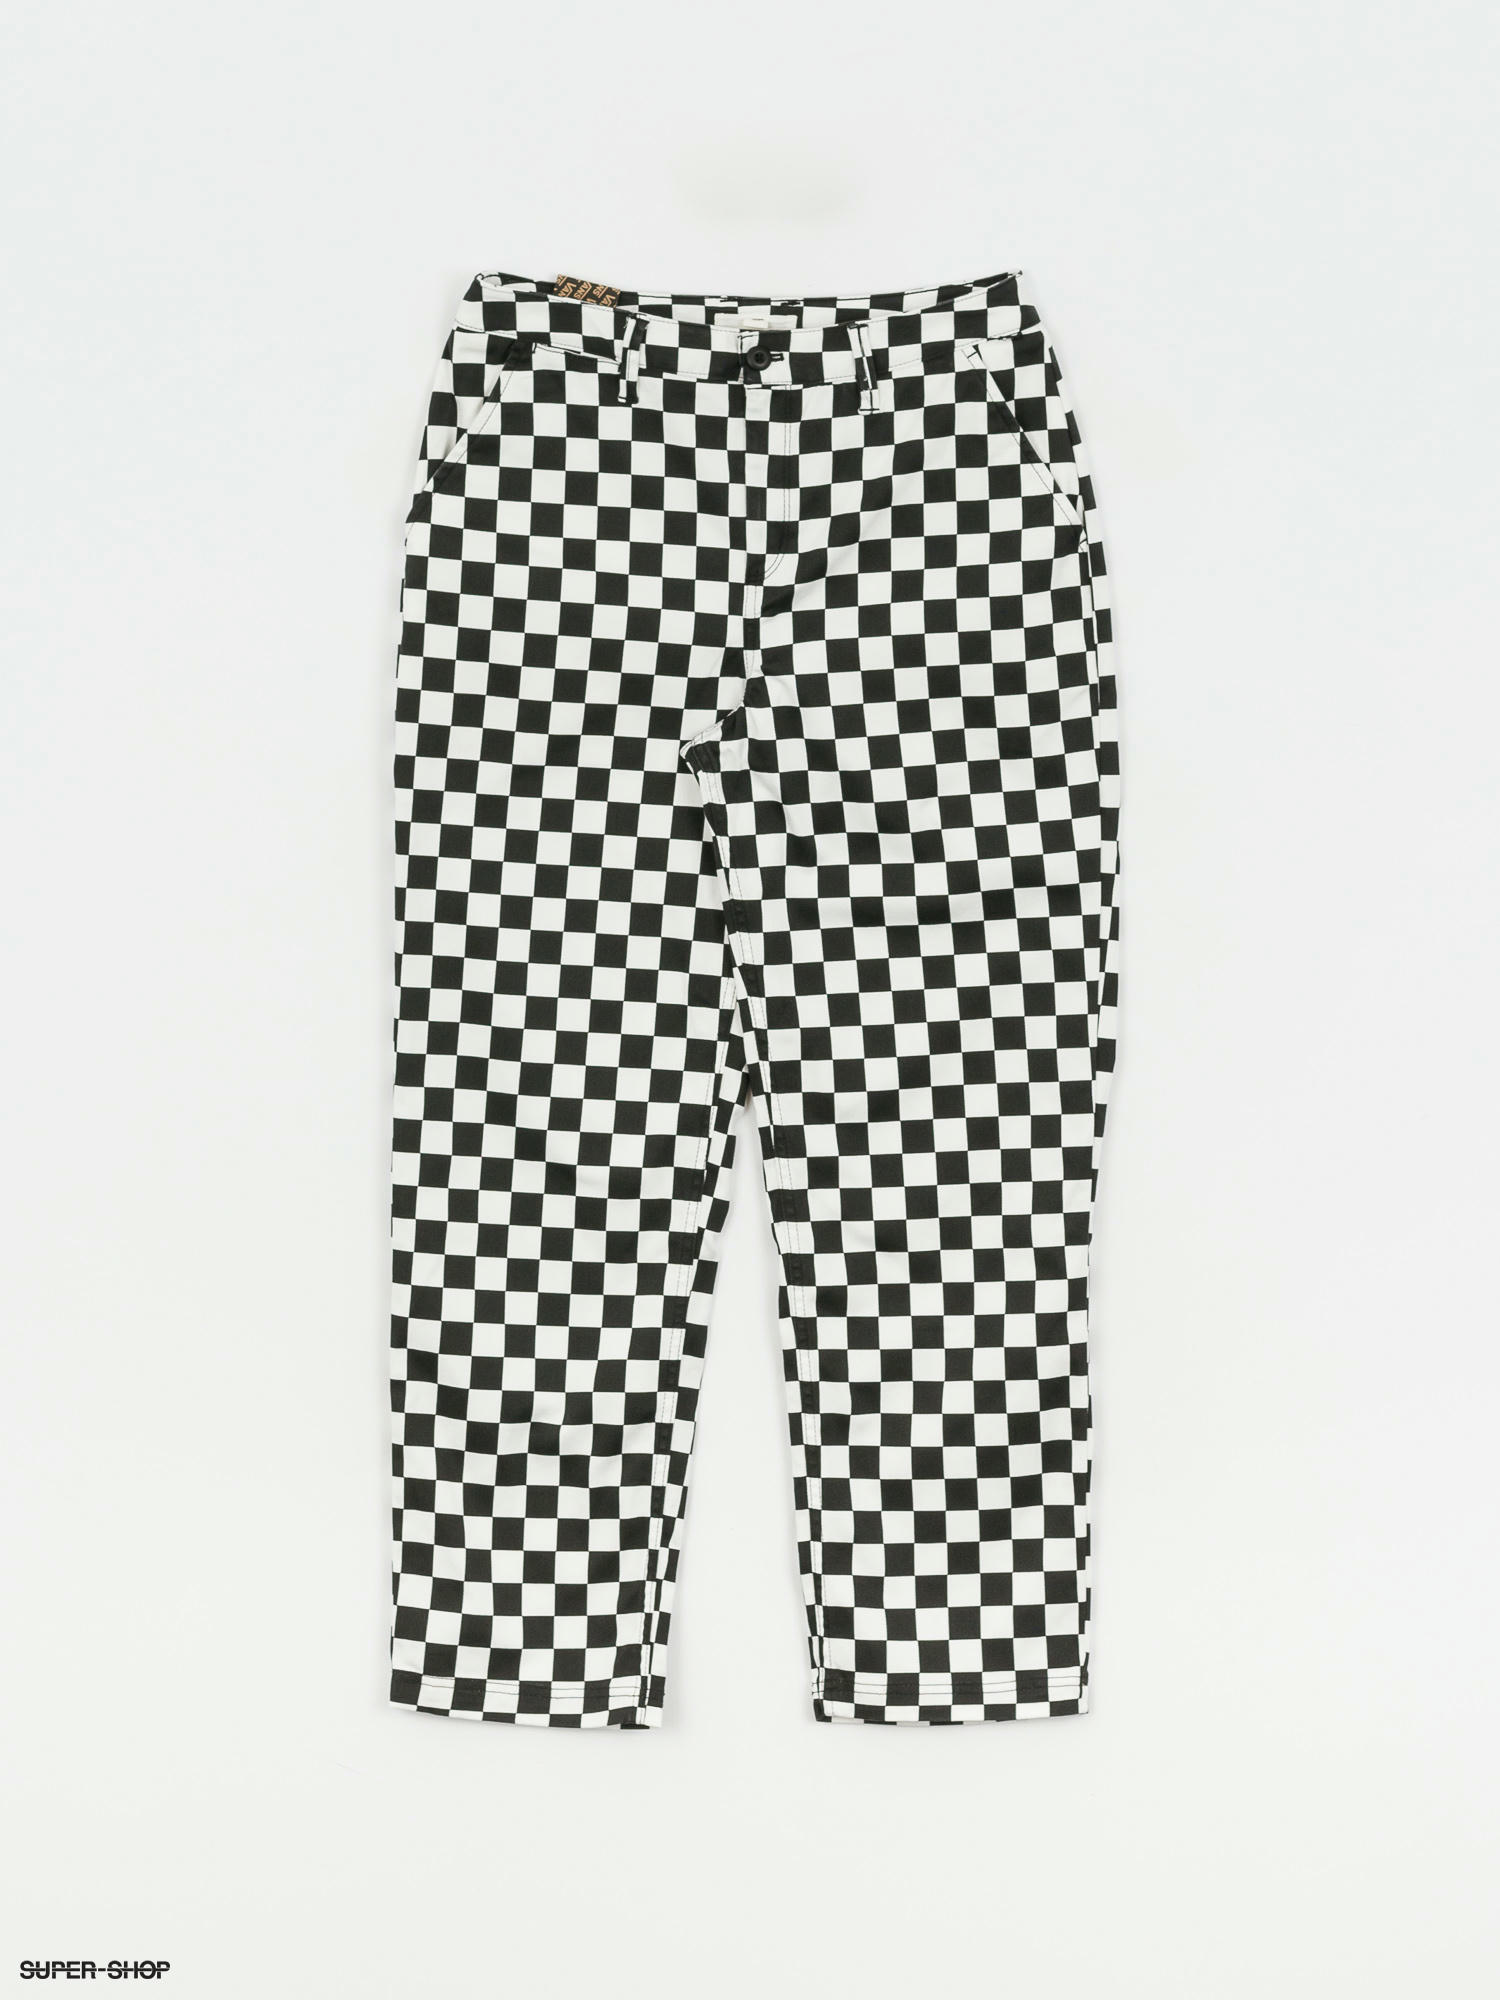 van checkerboard shorts